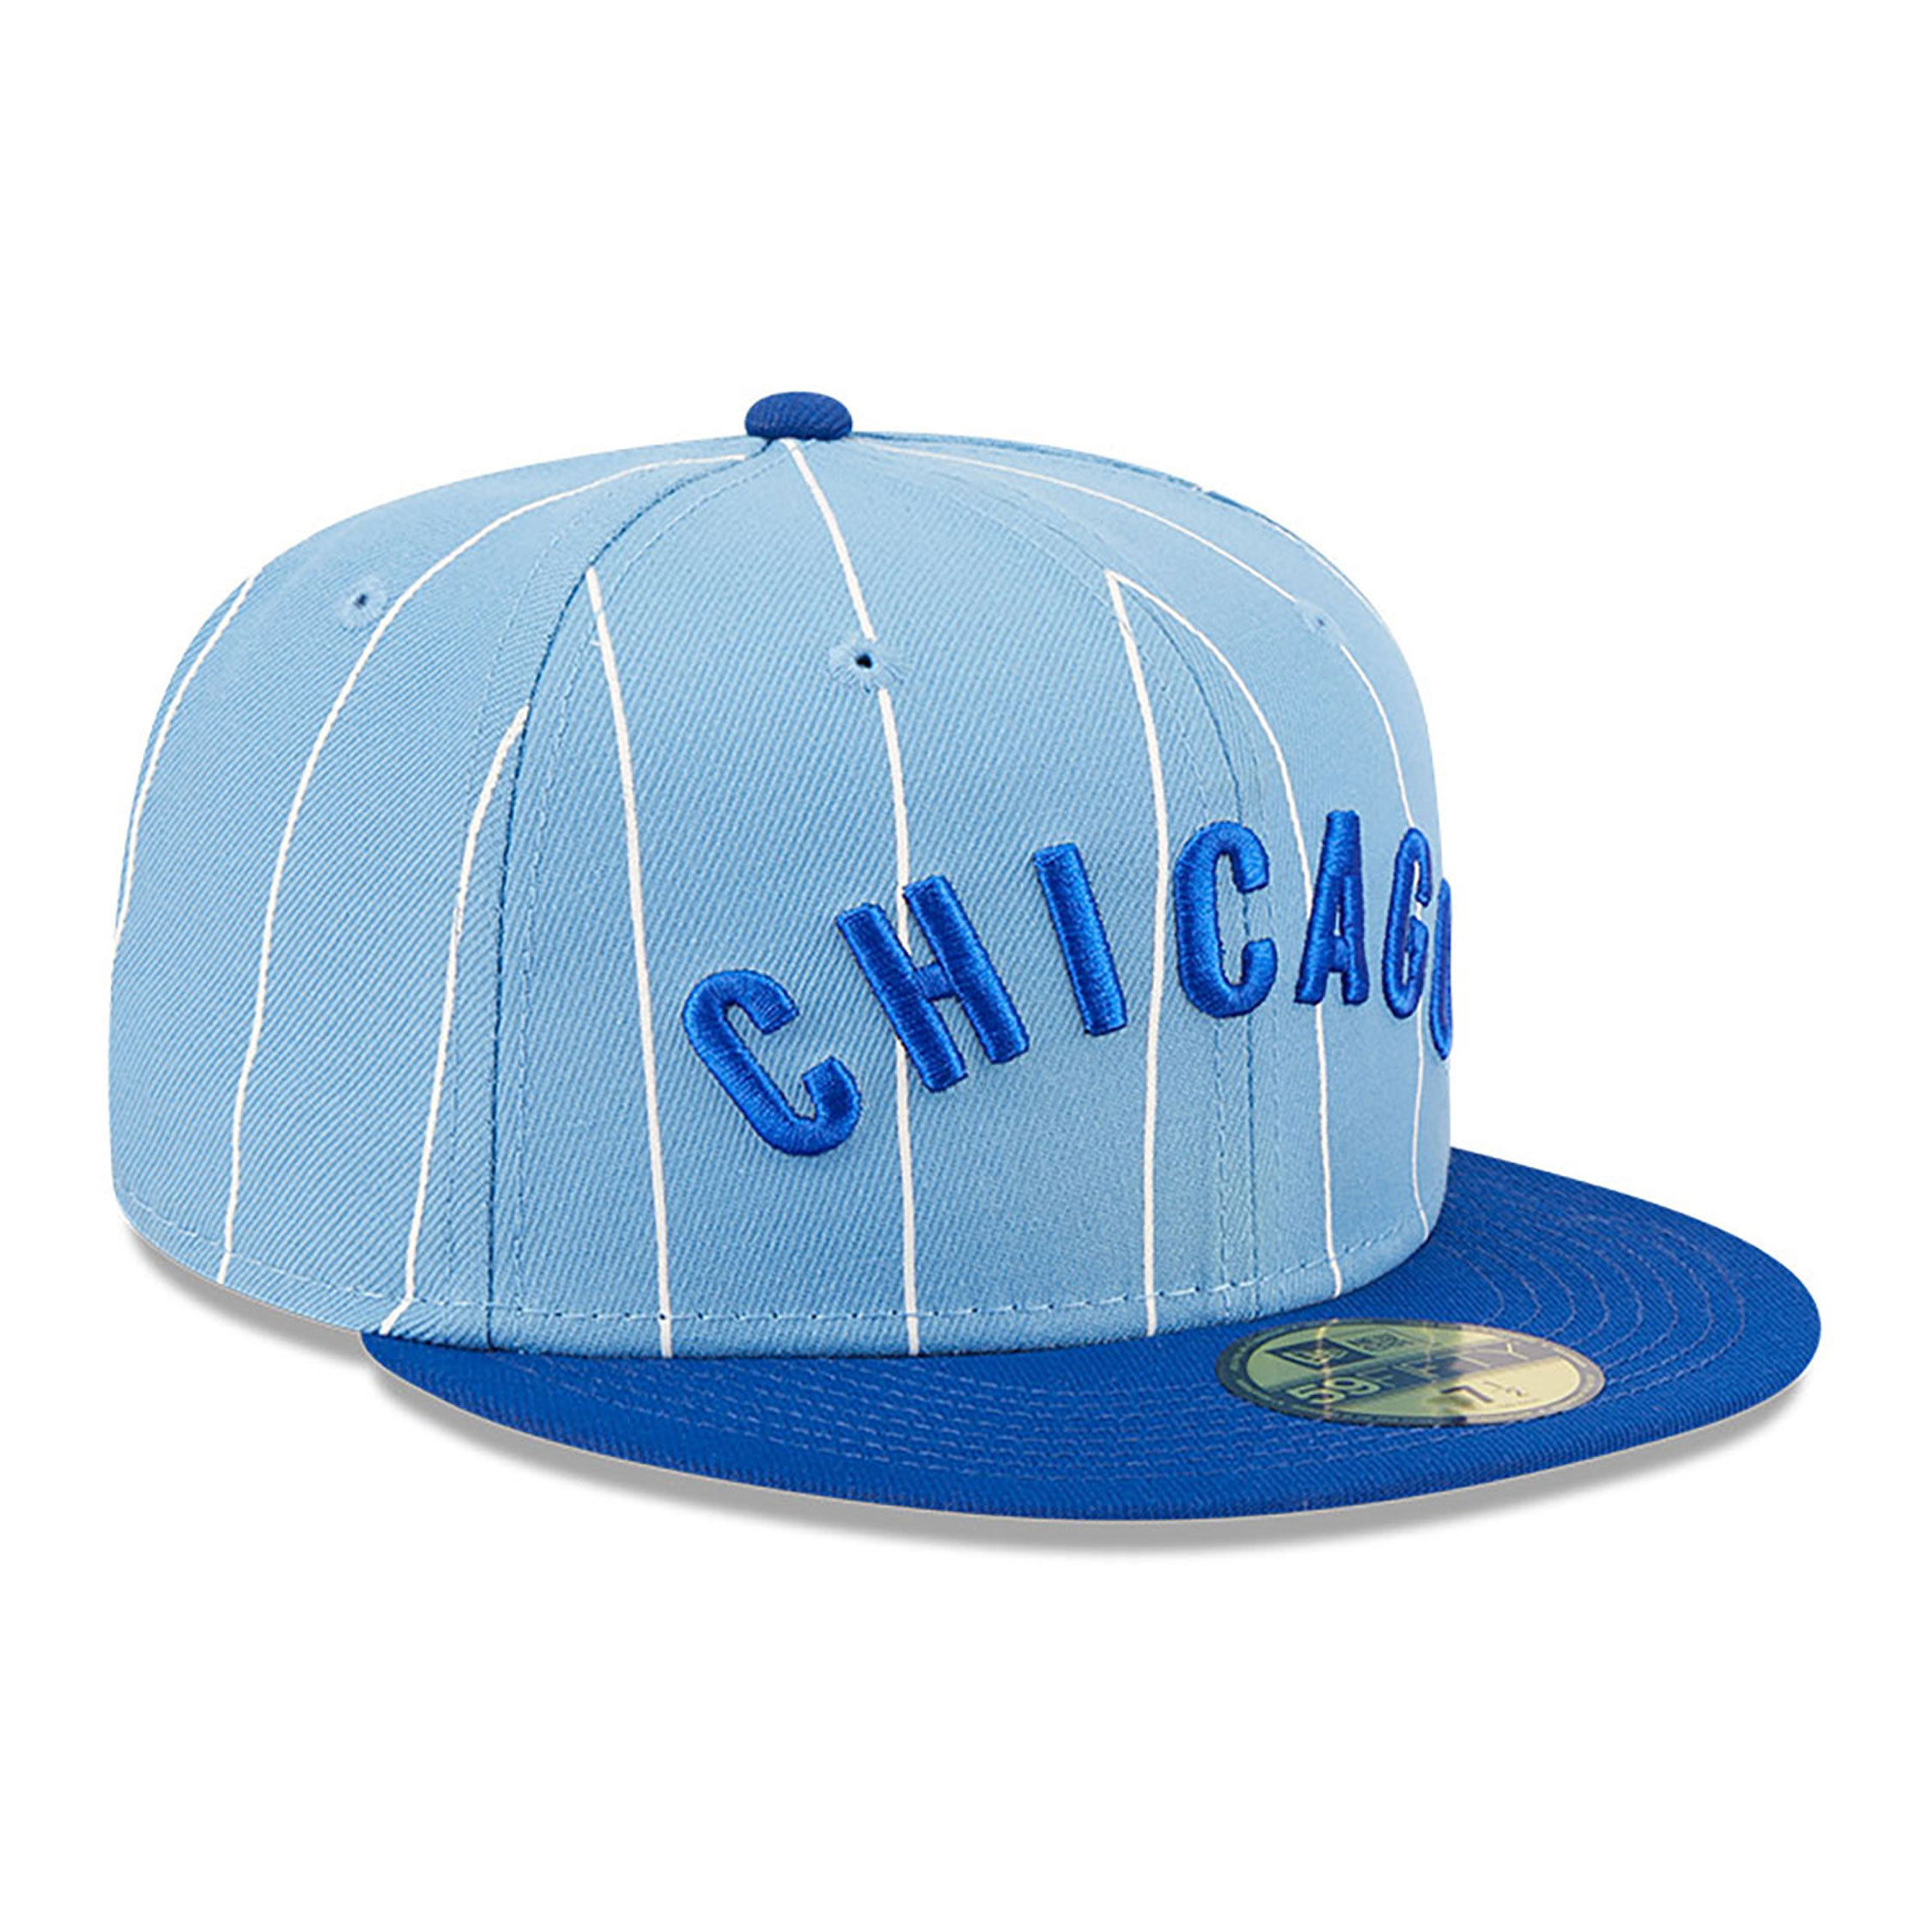 Chicago Cubs Powder Blues Casquette ajustée 59FIFTY bleu pastel